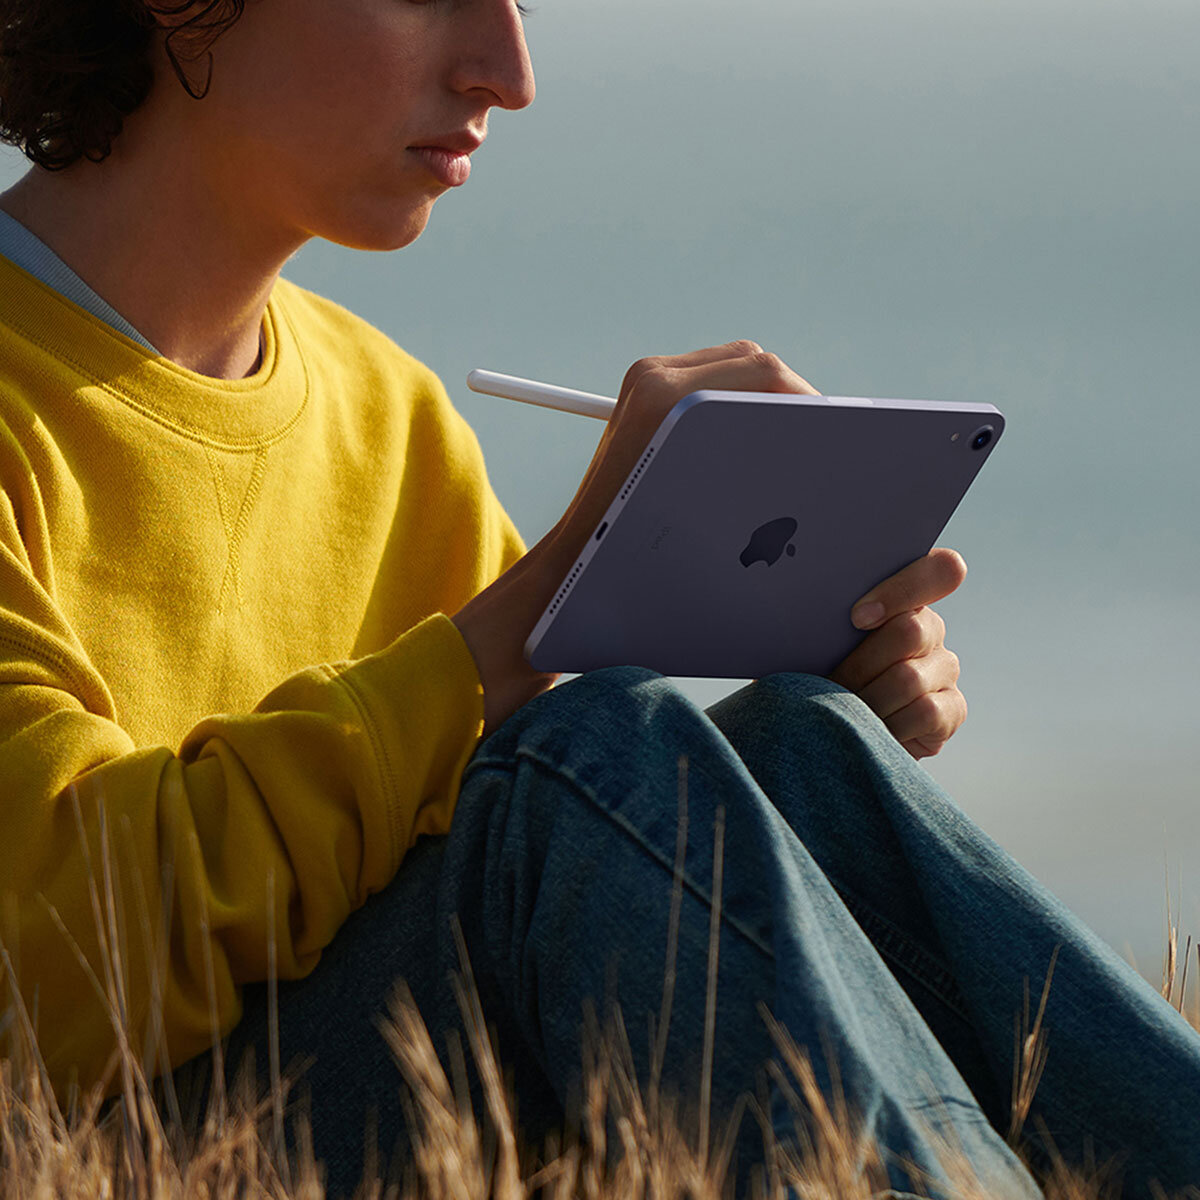 Apple iPad Mini 8.3" Wi-Fi 256GB Rosa